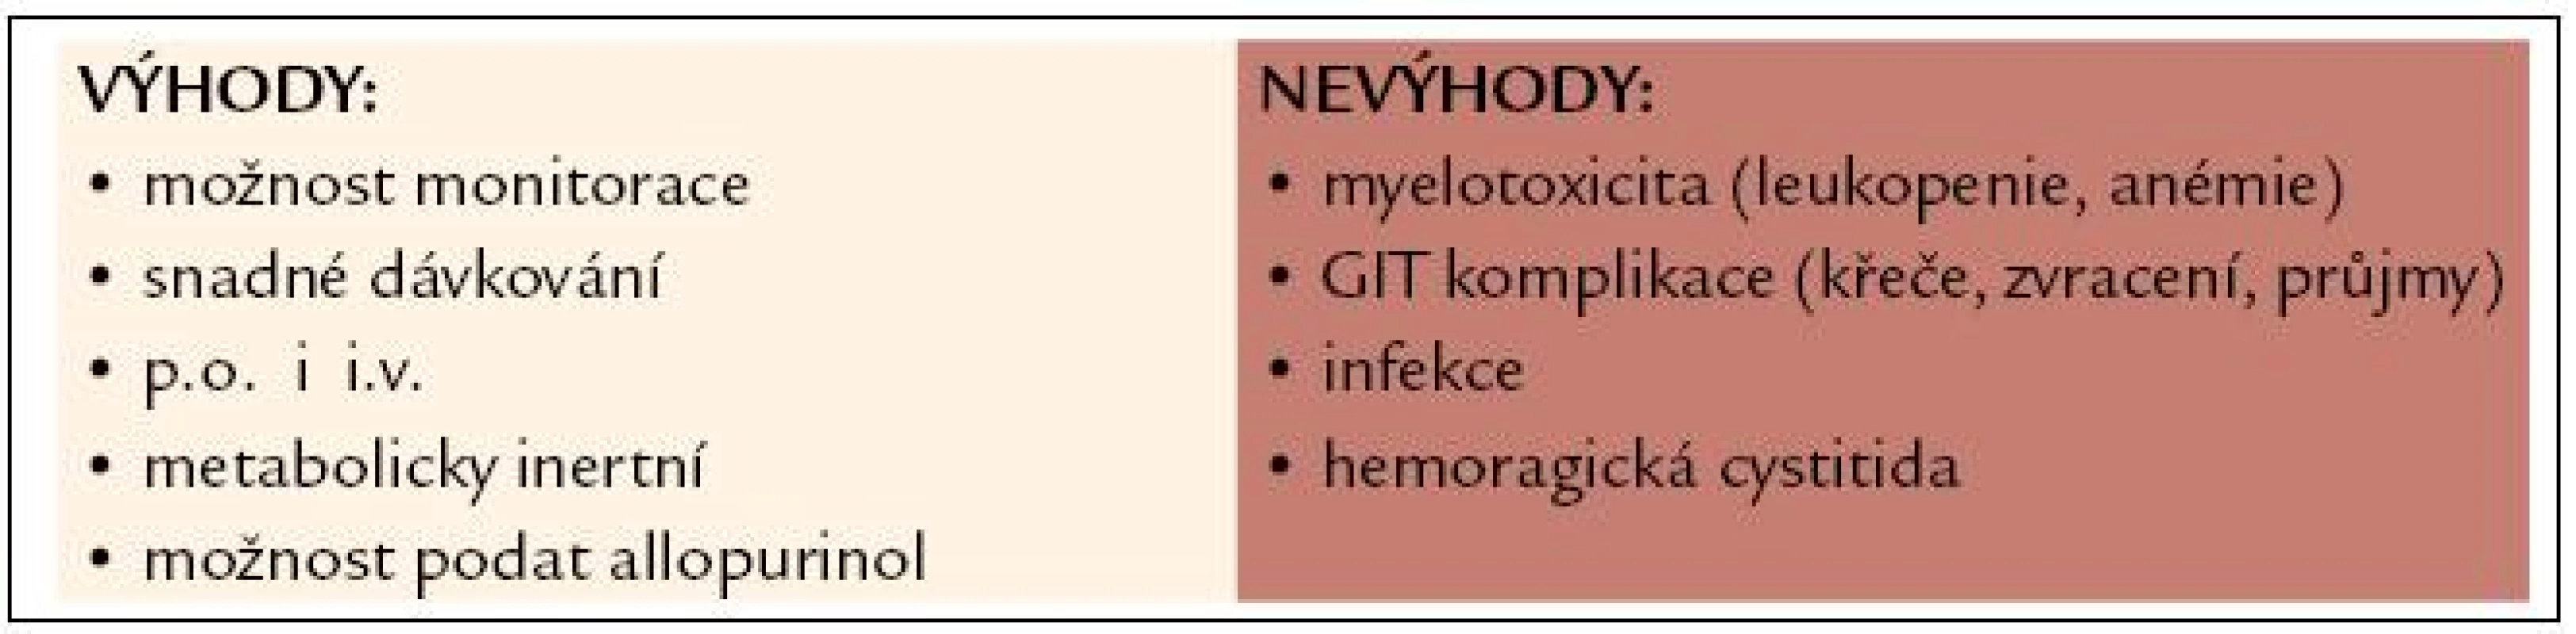 Mykofenolát mofetil – Cellcept 
generika: Mykofenolát mofetil Teva, Sandoz, Myfenax Teva.